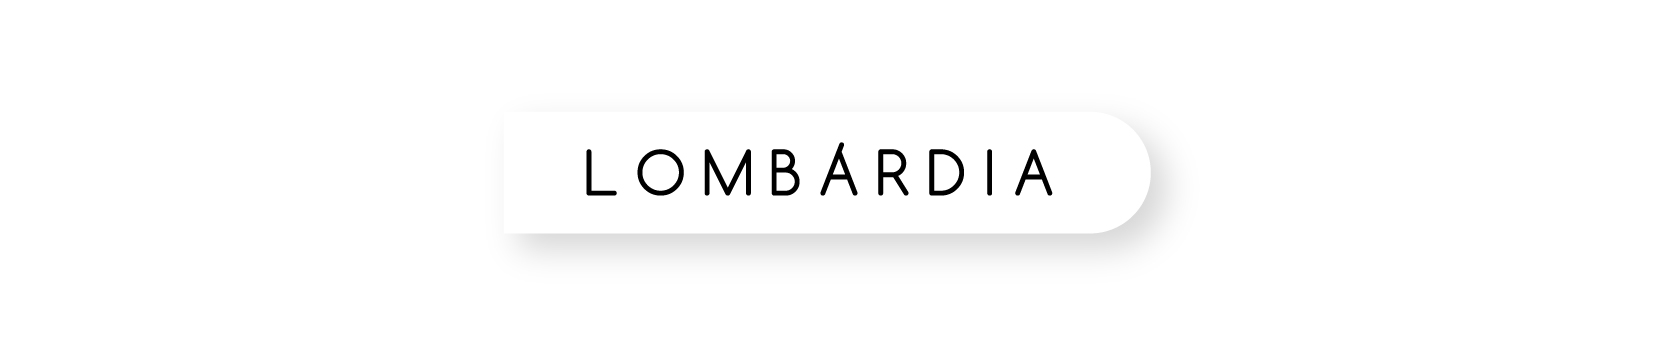 Логотип Lombardia